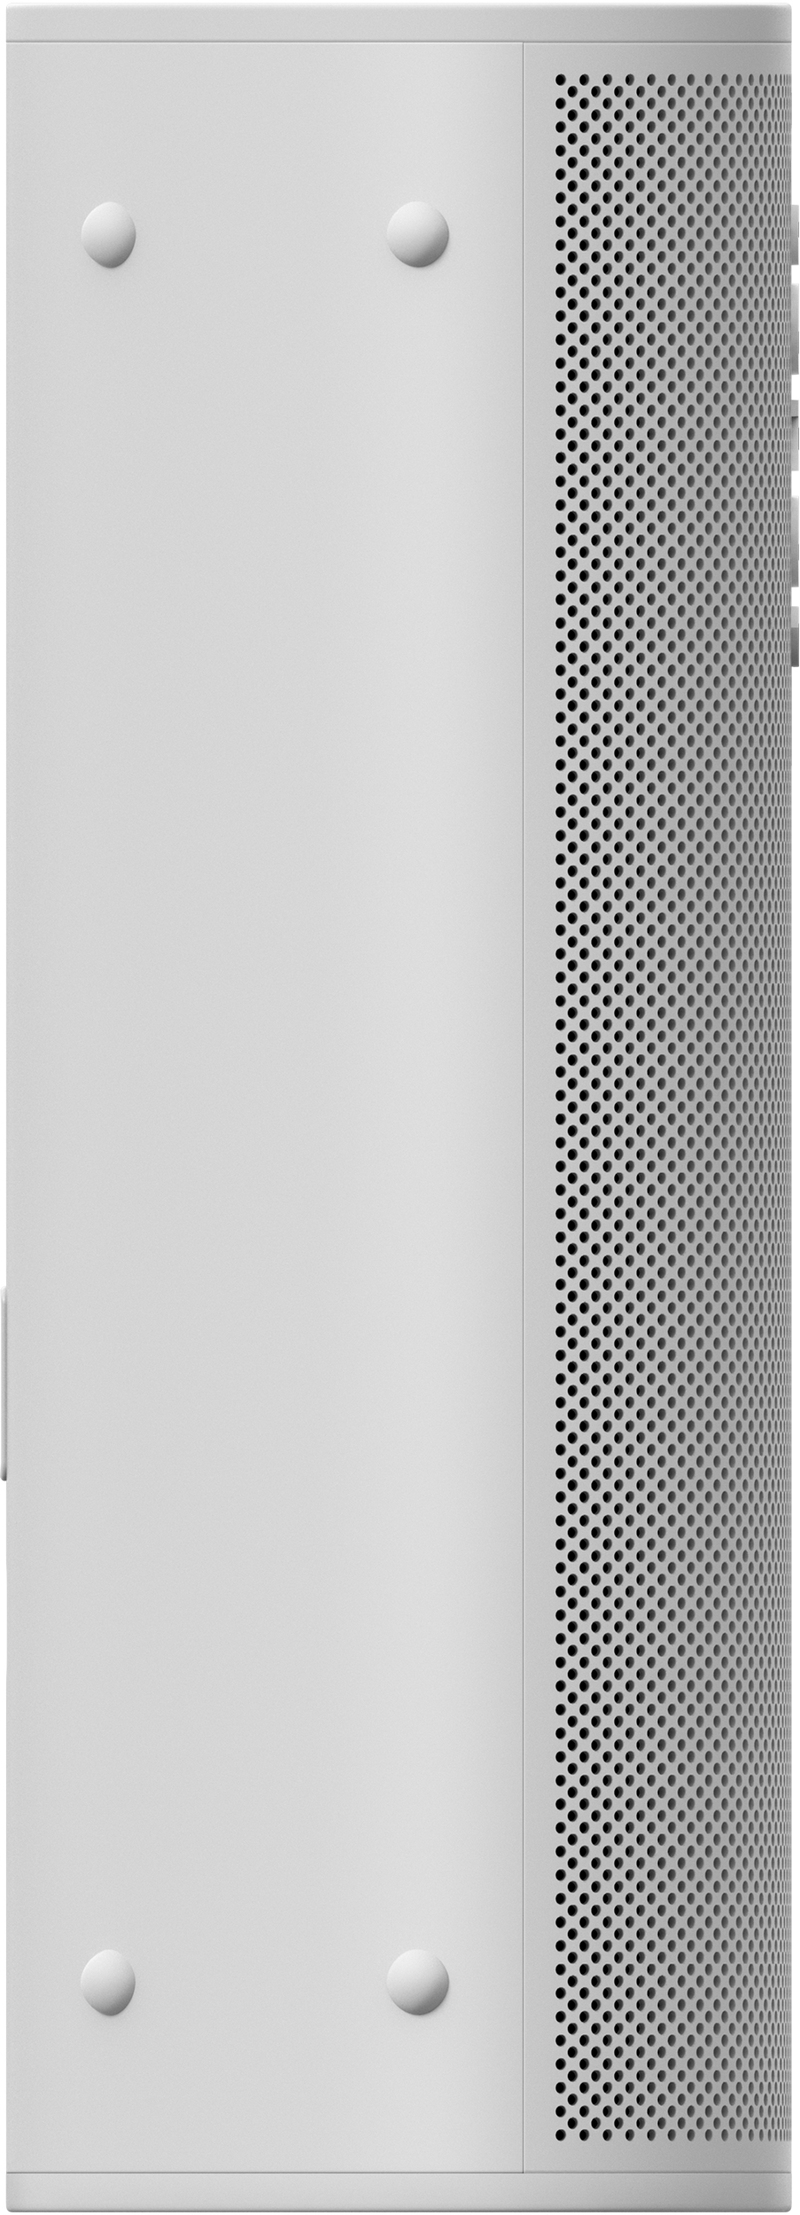 Sonos Roam Lunar Portable Smart Speaker (1st Gen) - White